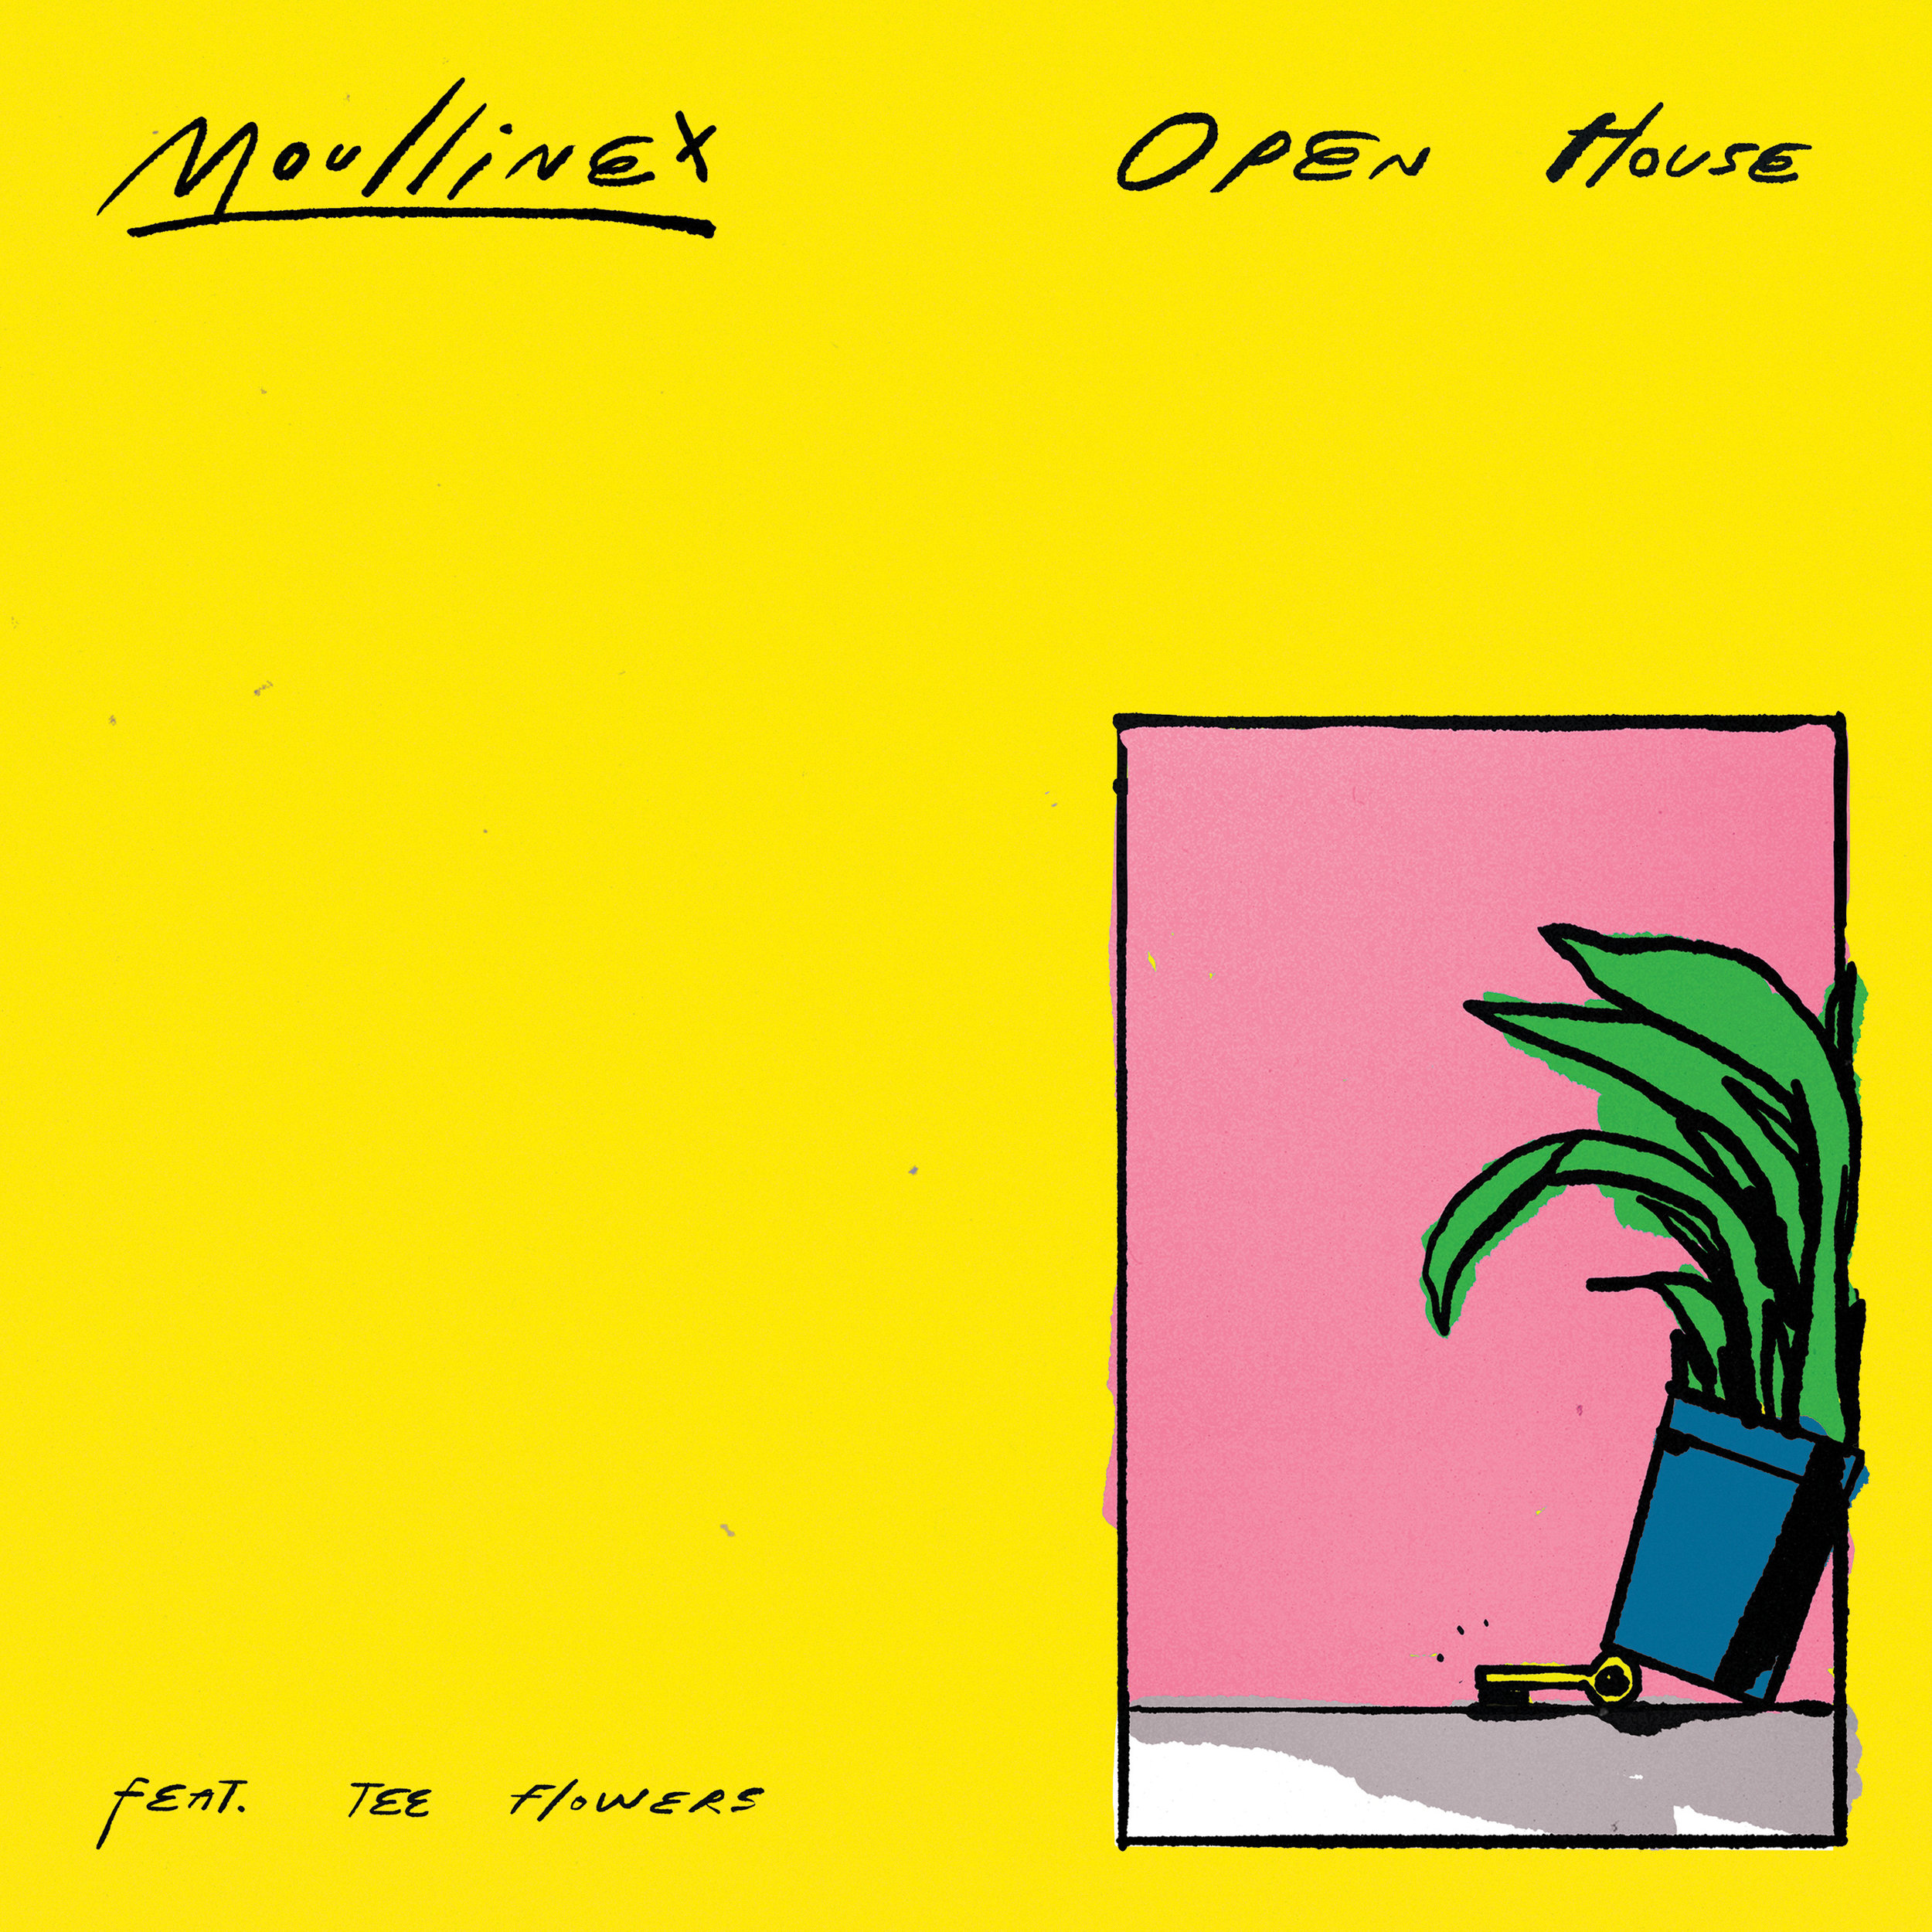 DT070: Moullinex - Open House